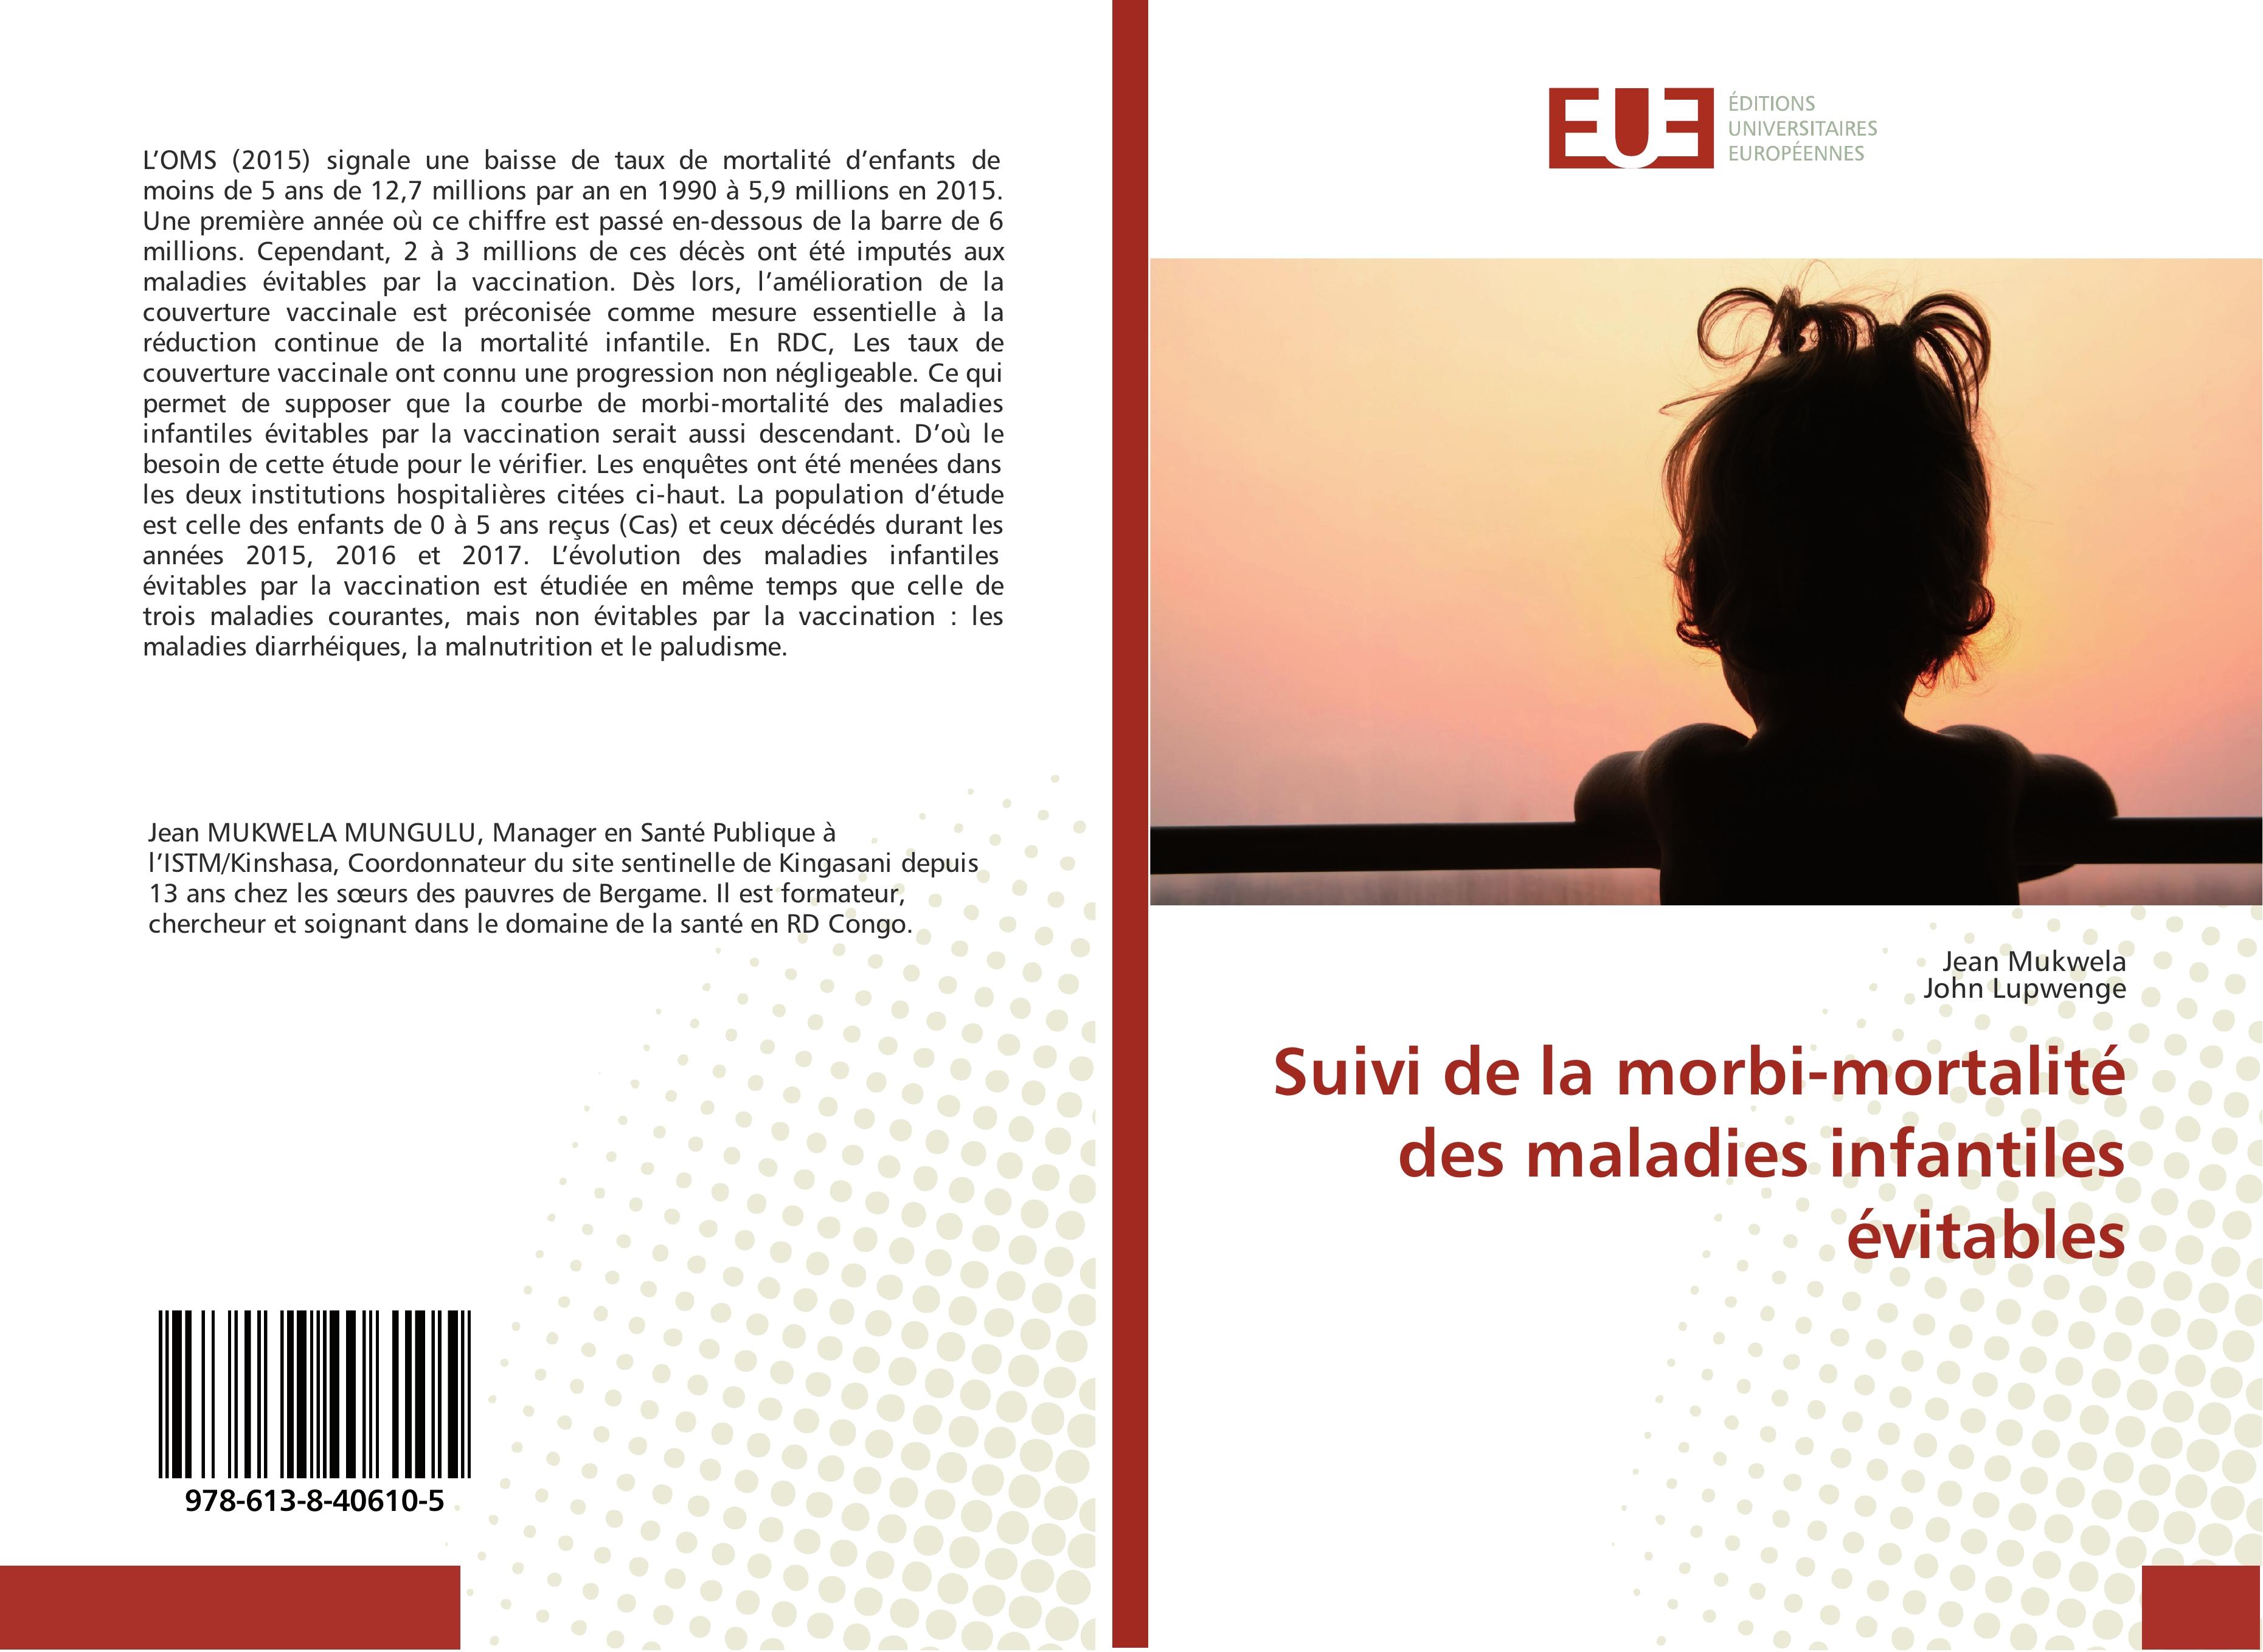 Suivi de la morbi-mortalité des maladies infantiles évitables  Jean Mukwela (u. a.)  Taschenbuch  Paperback  Französisch  2018 - Mukwela, Jean